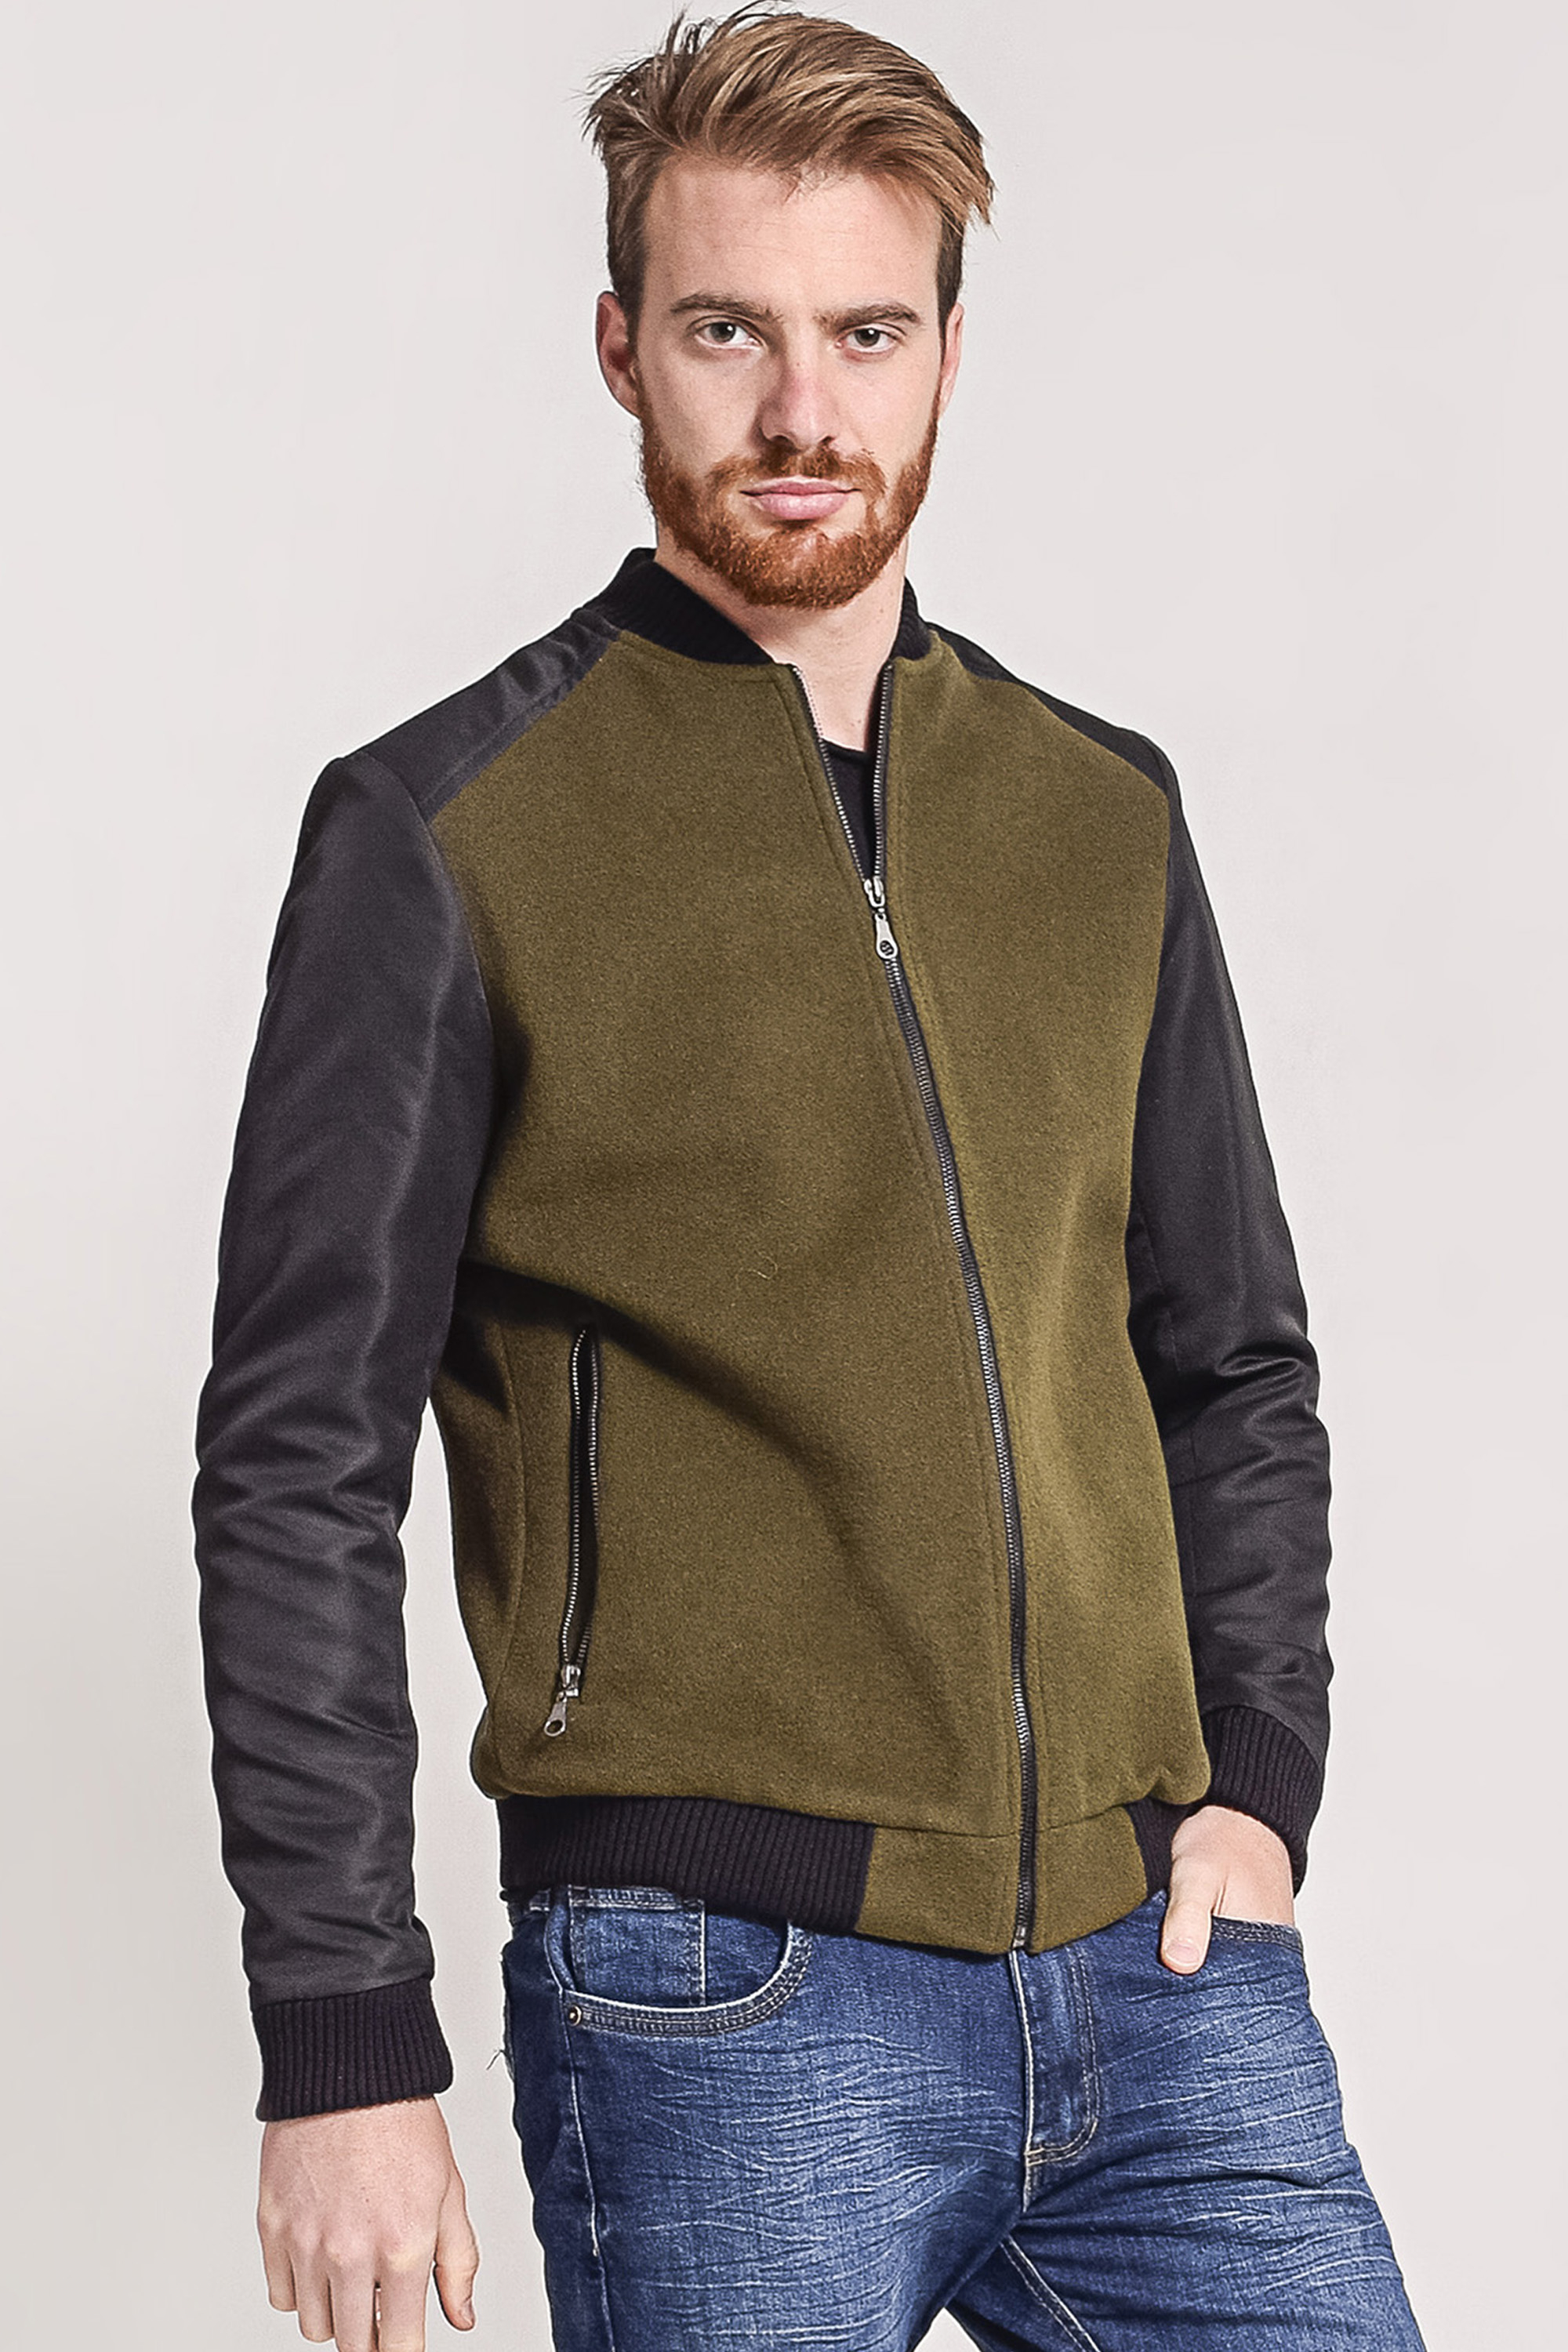 Jaqueta masculina em lã mangas em nylon verde